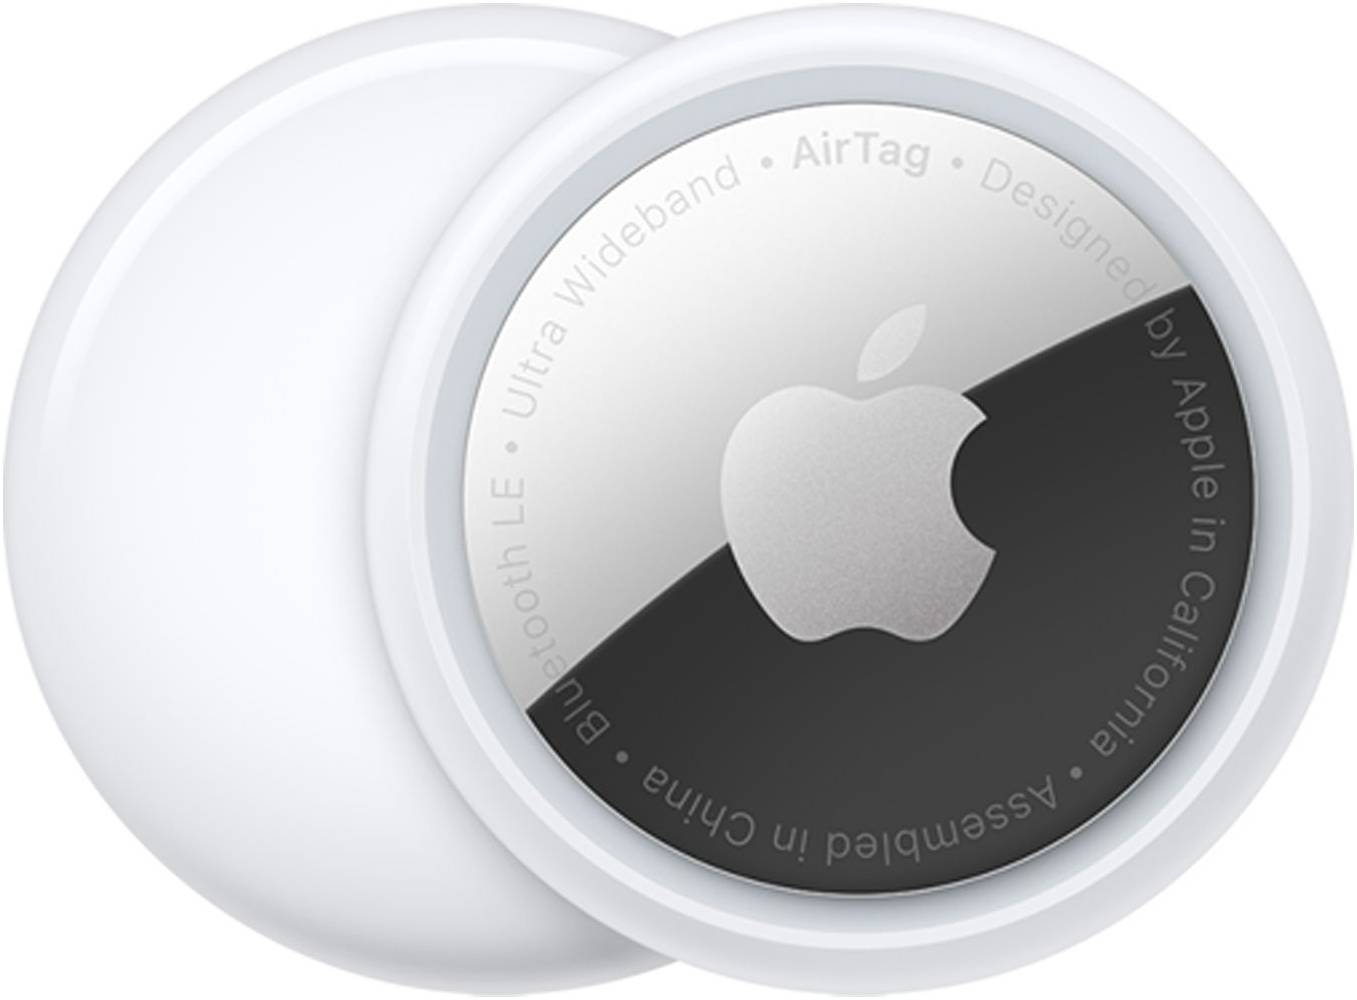 Apple AirTag، حزمة واحدة